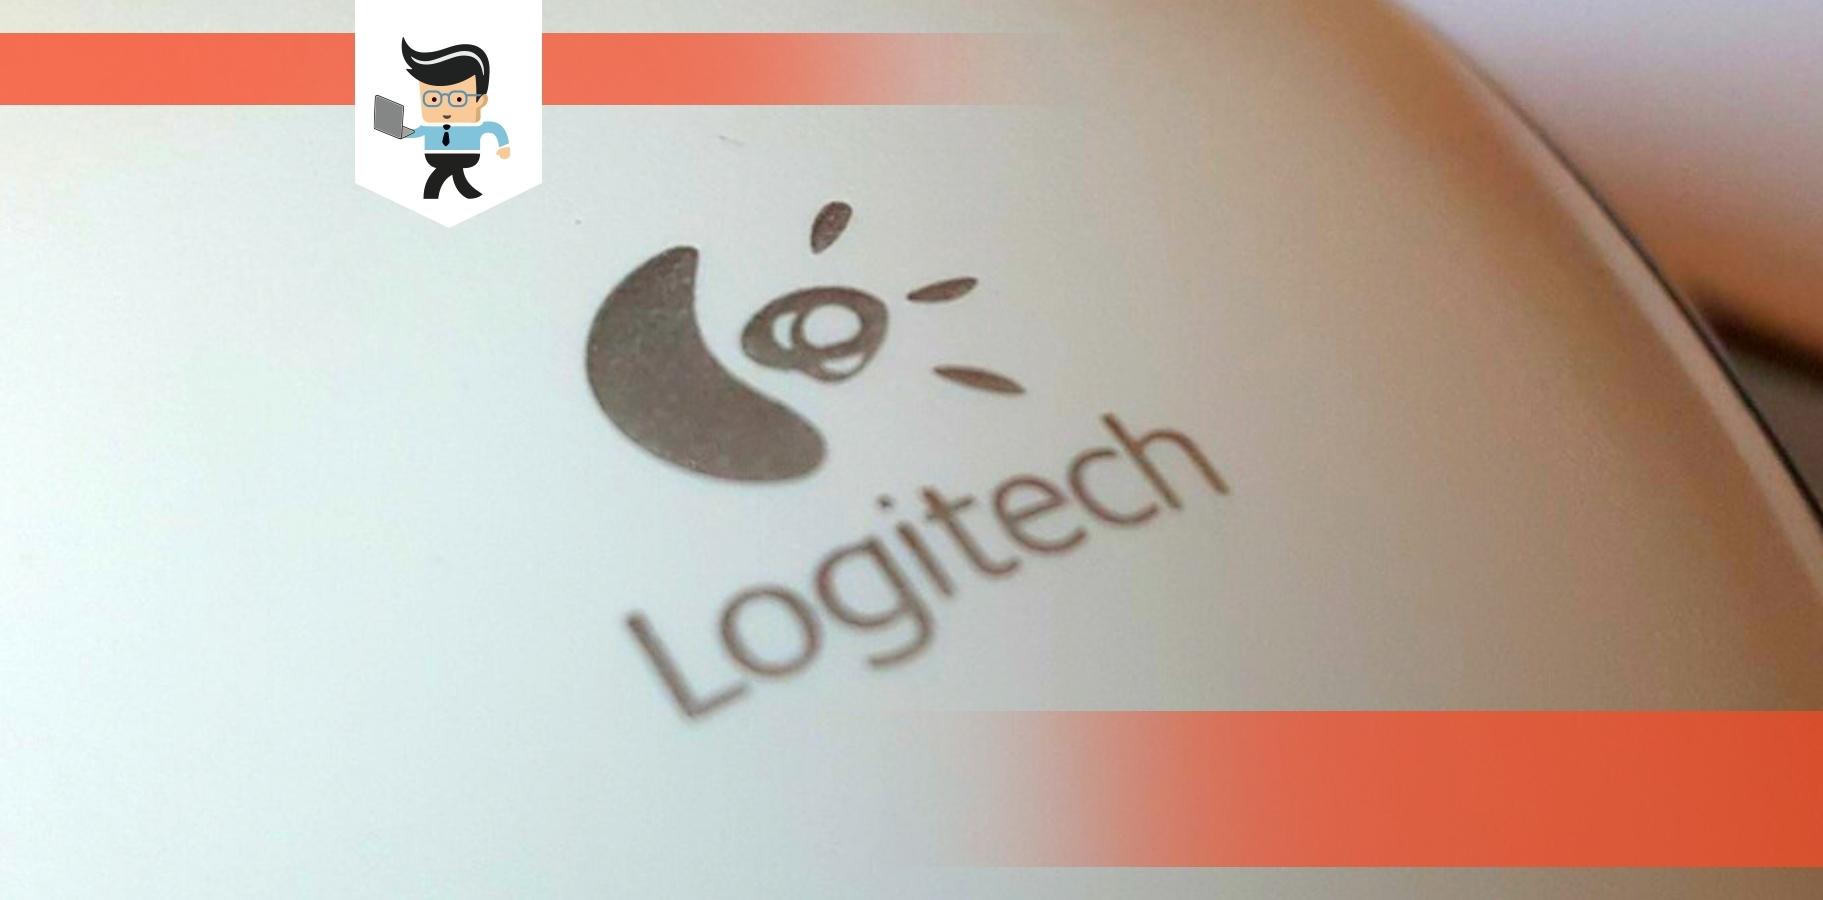 Nøjagtig Algebra renhed Logitech Update Keeps Popping Up: How To Disable Logitech Updater